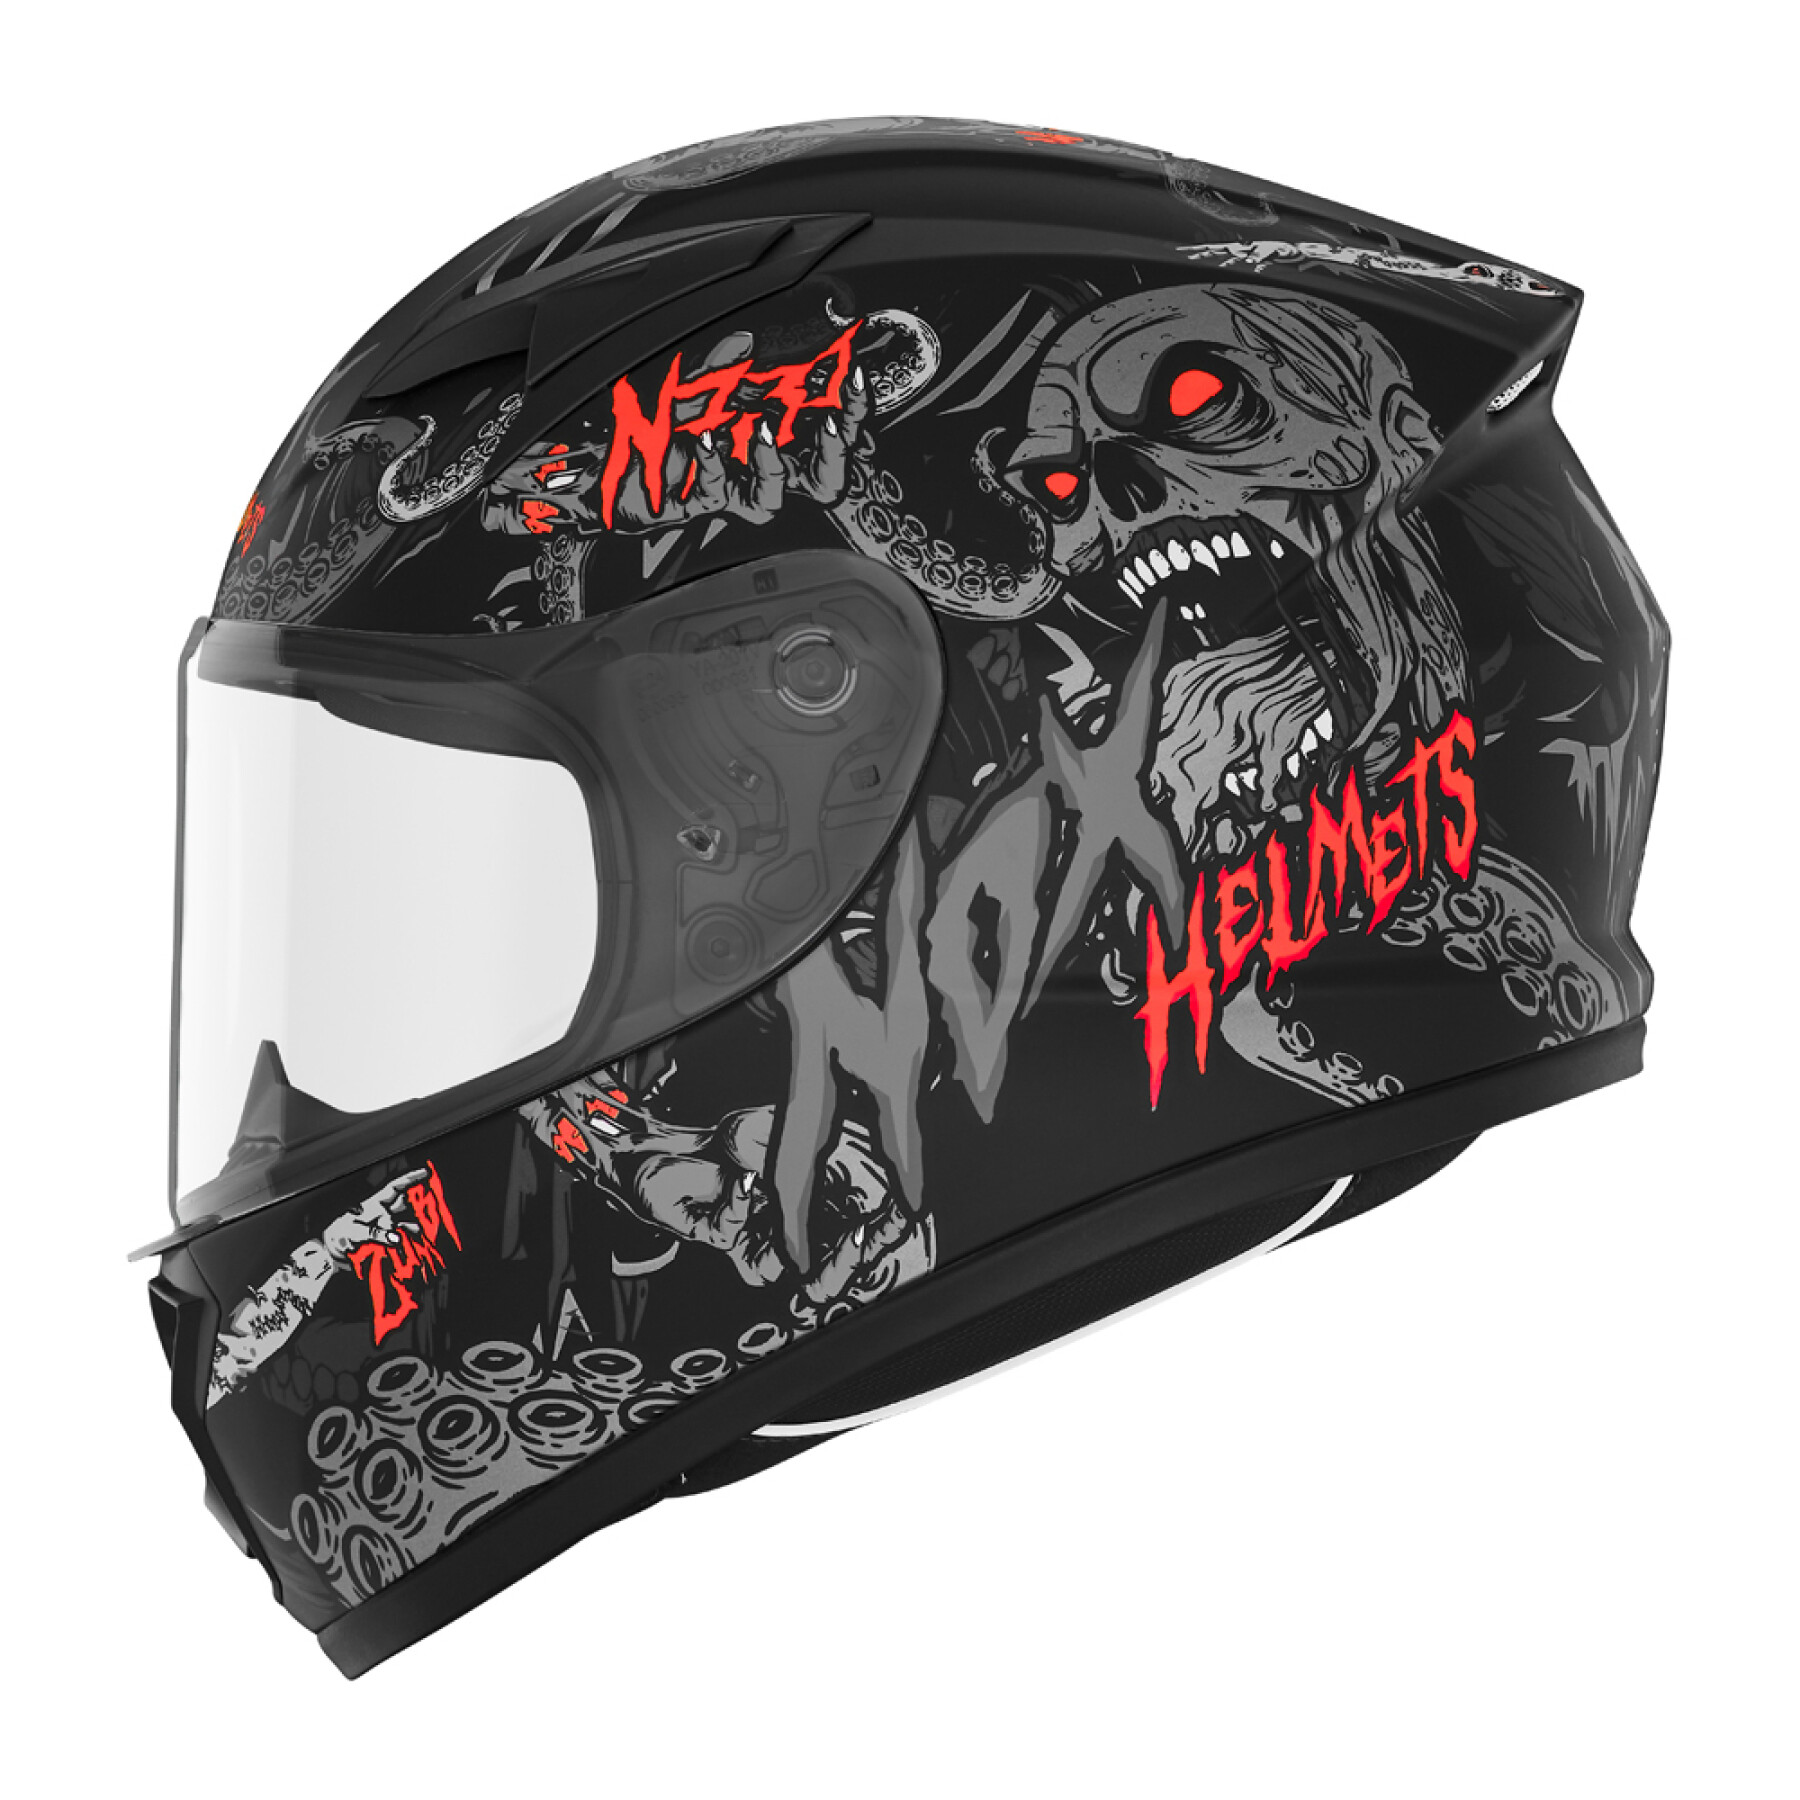 Full face motorcycle helmet Nox N731